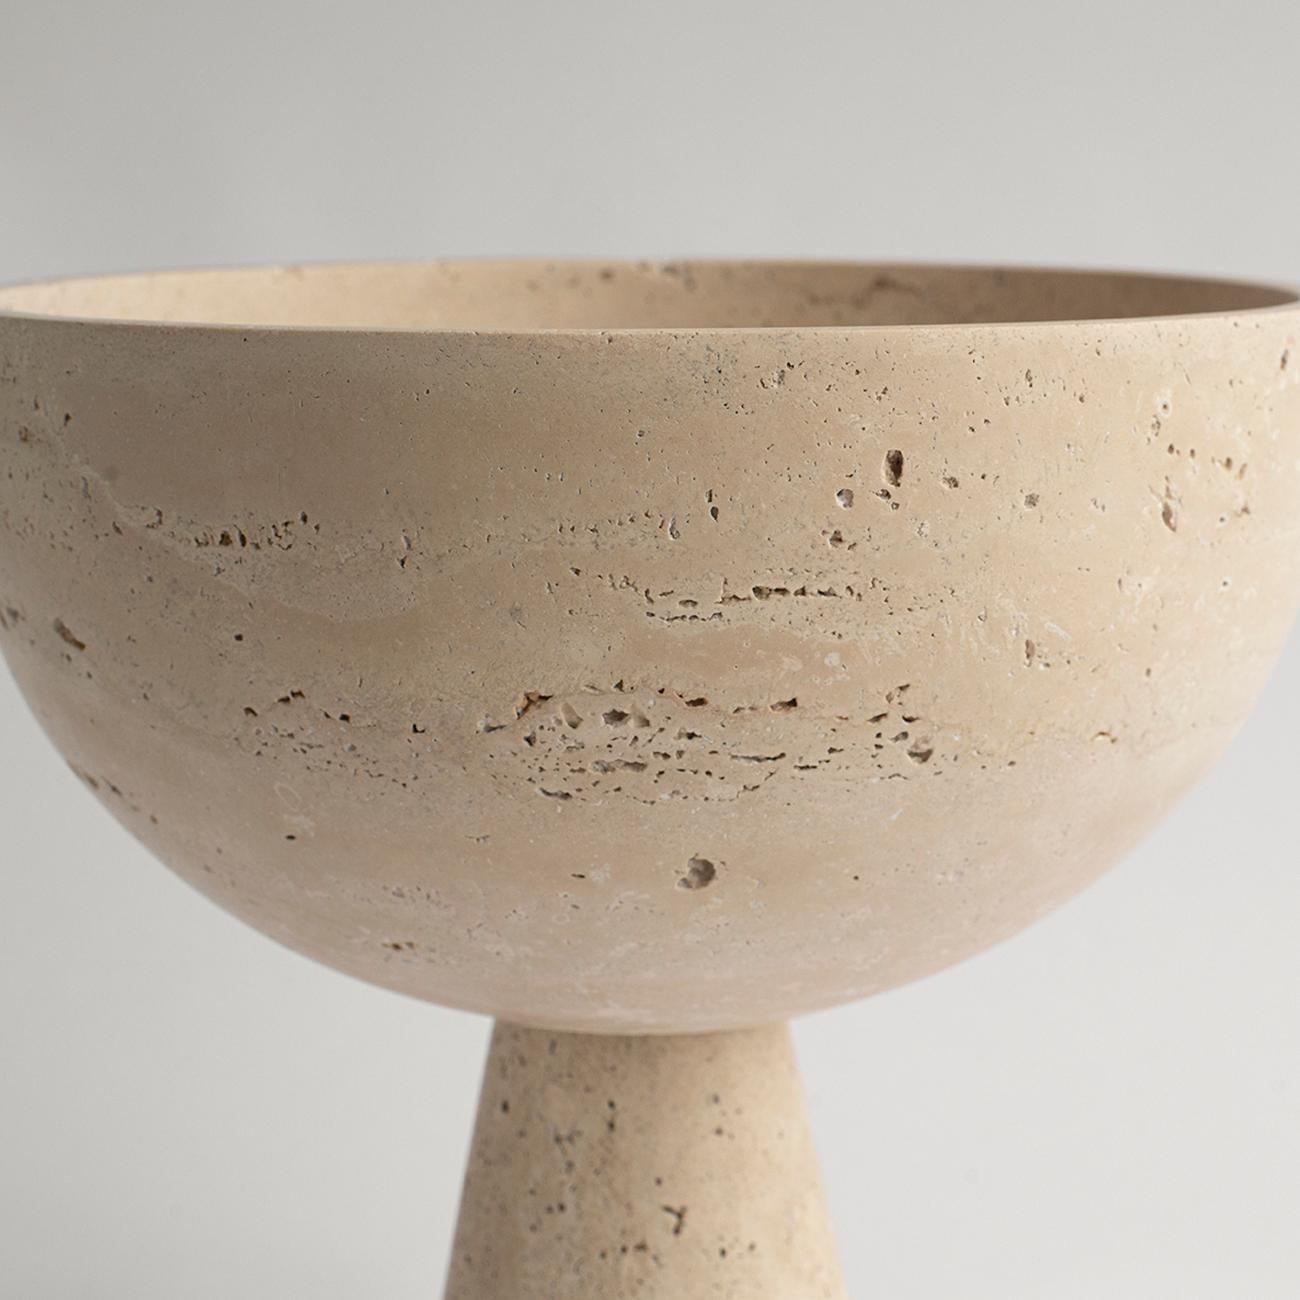 h&m pedestal bowl